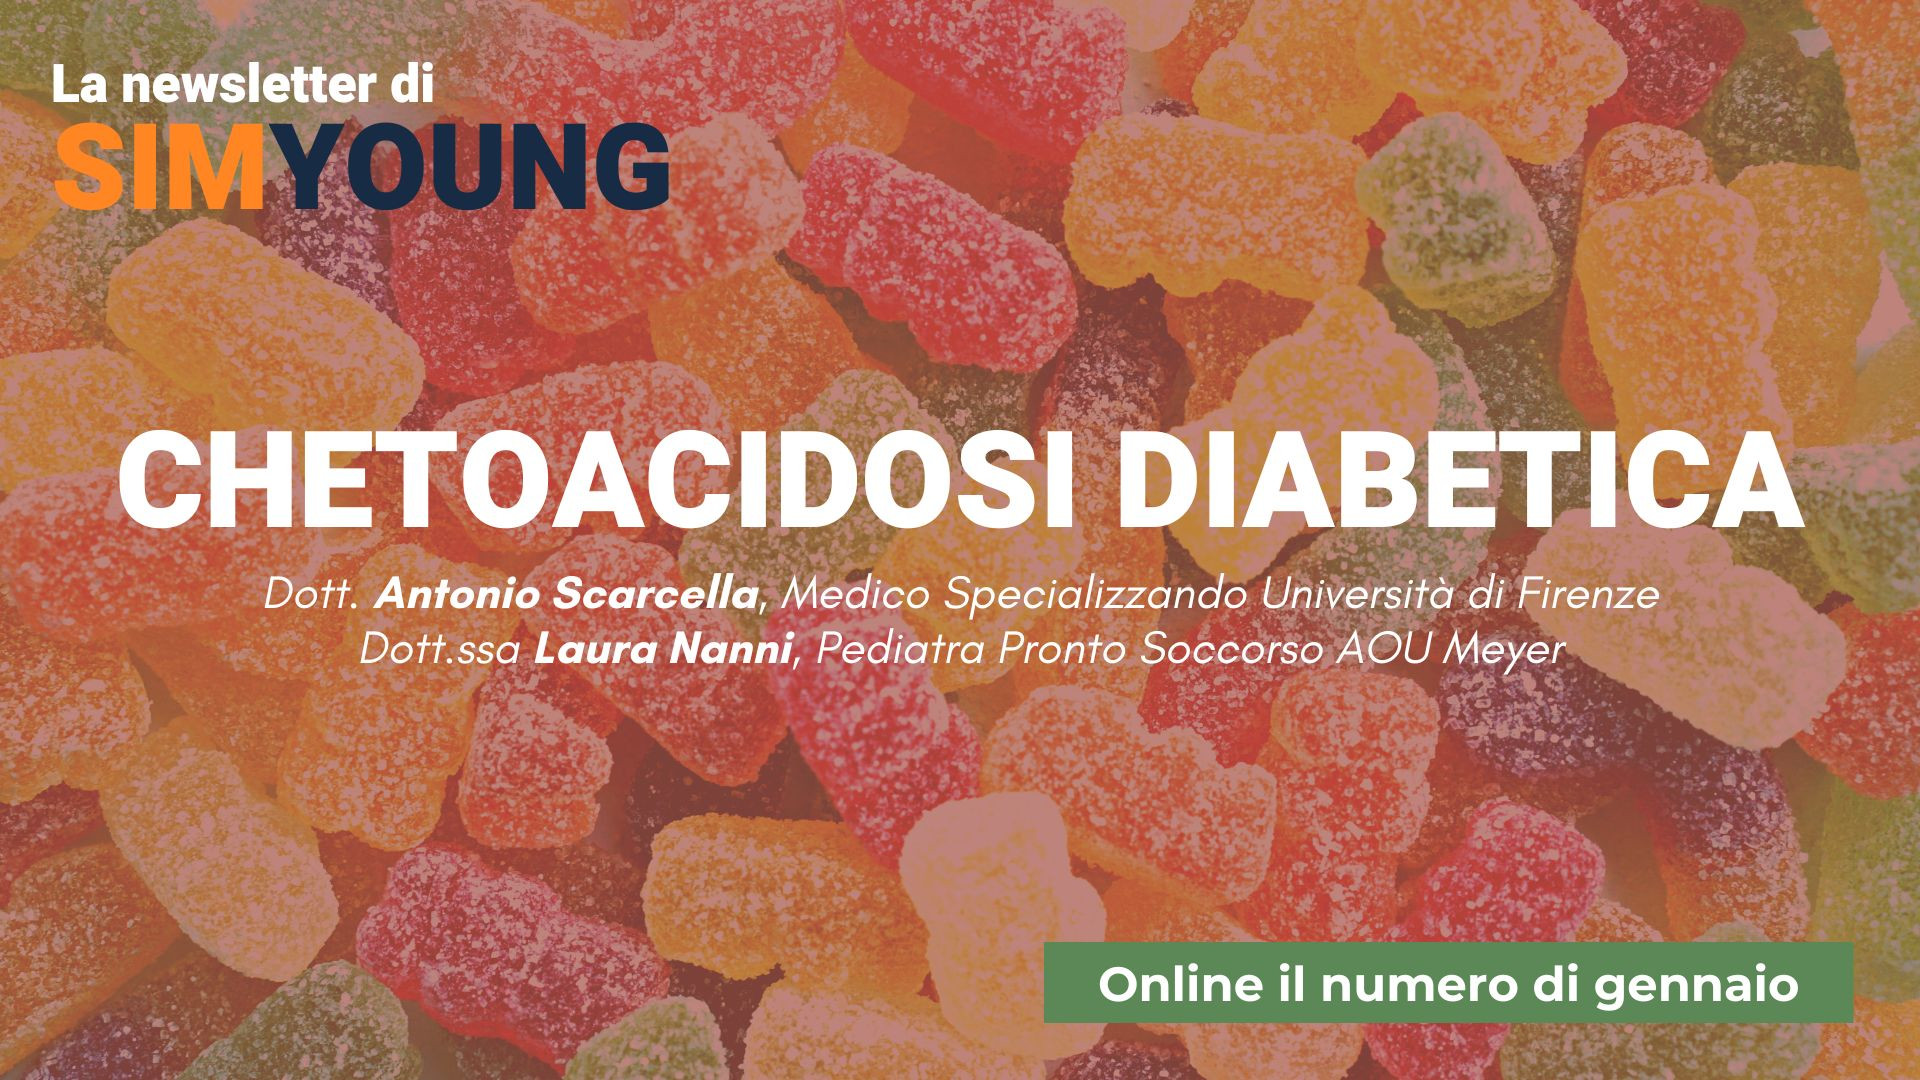 Chetoacidosi diabetica